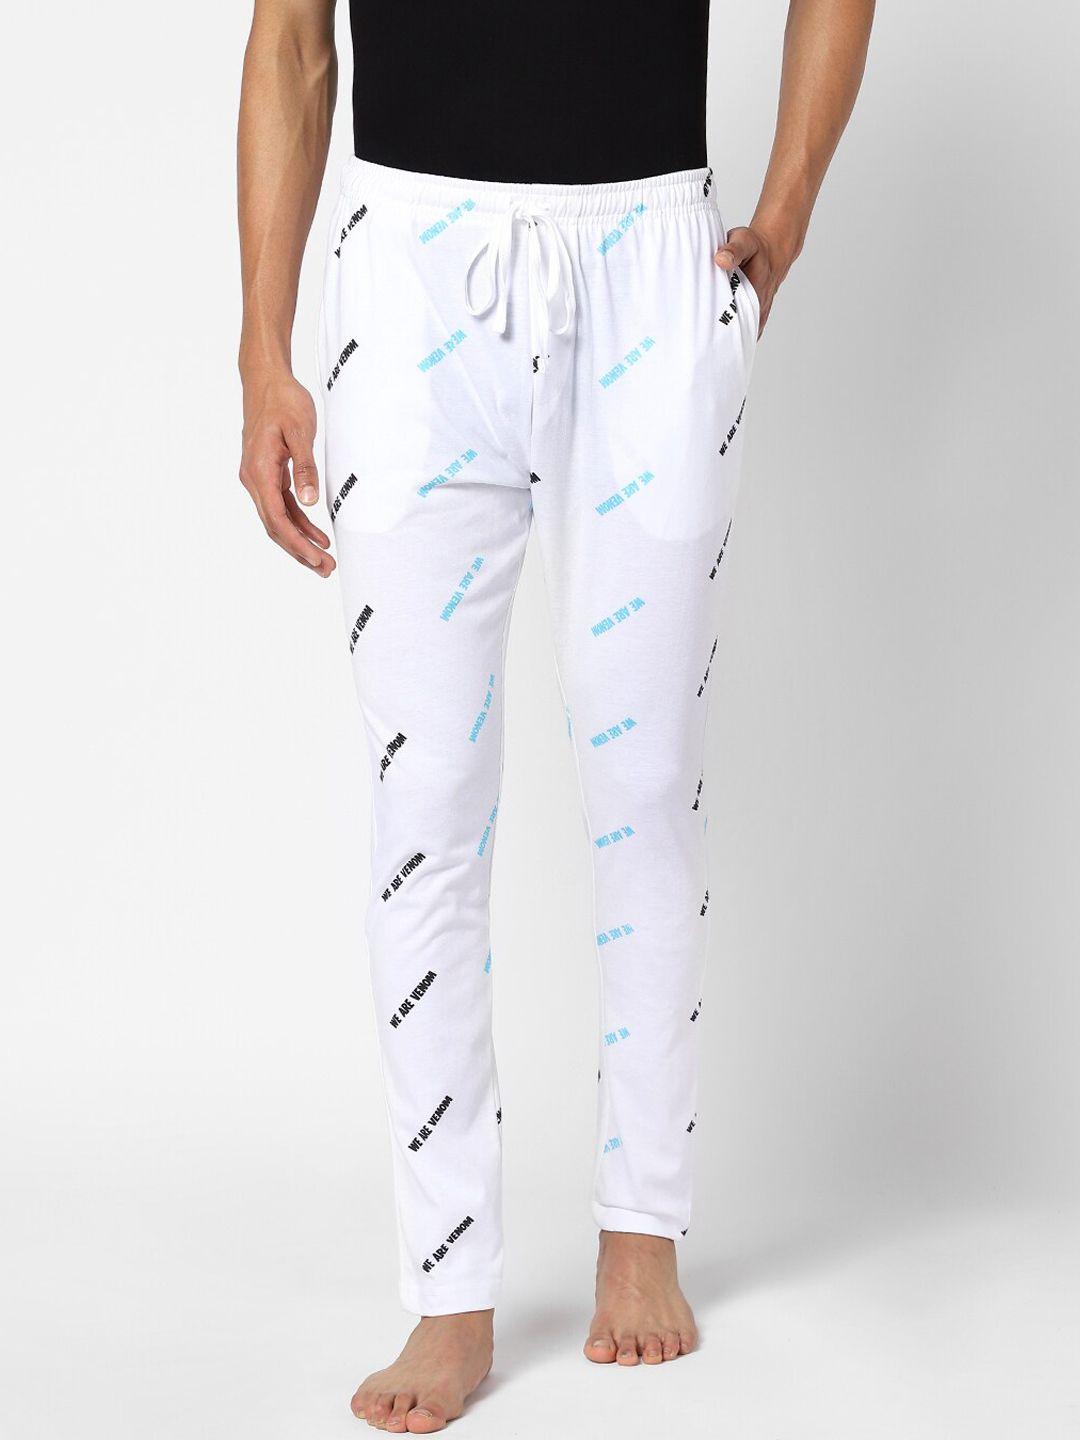 ajile by pantaloons men white & blue printed cotton lounge pants